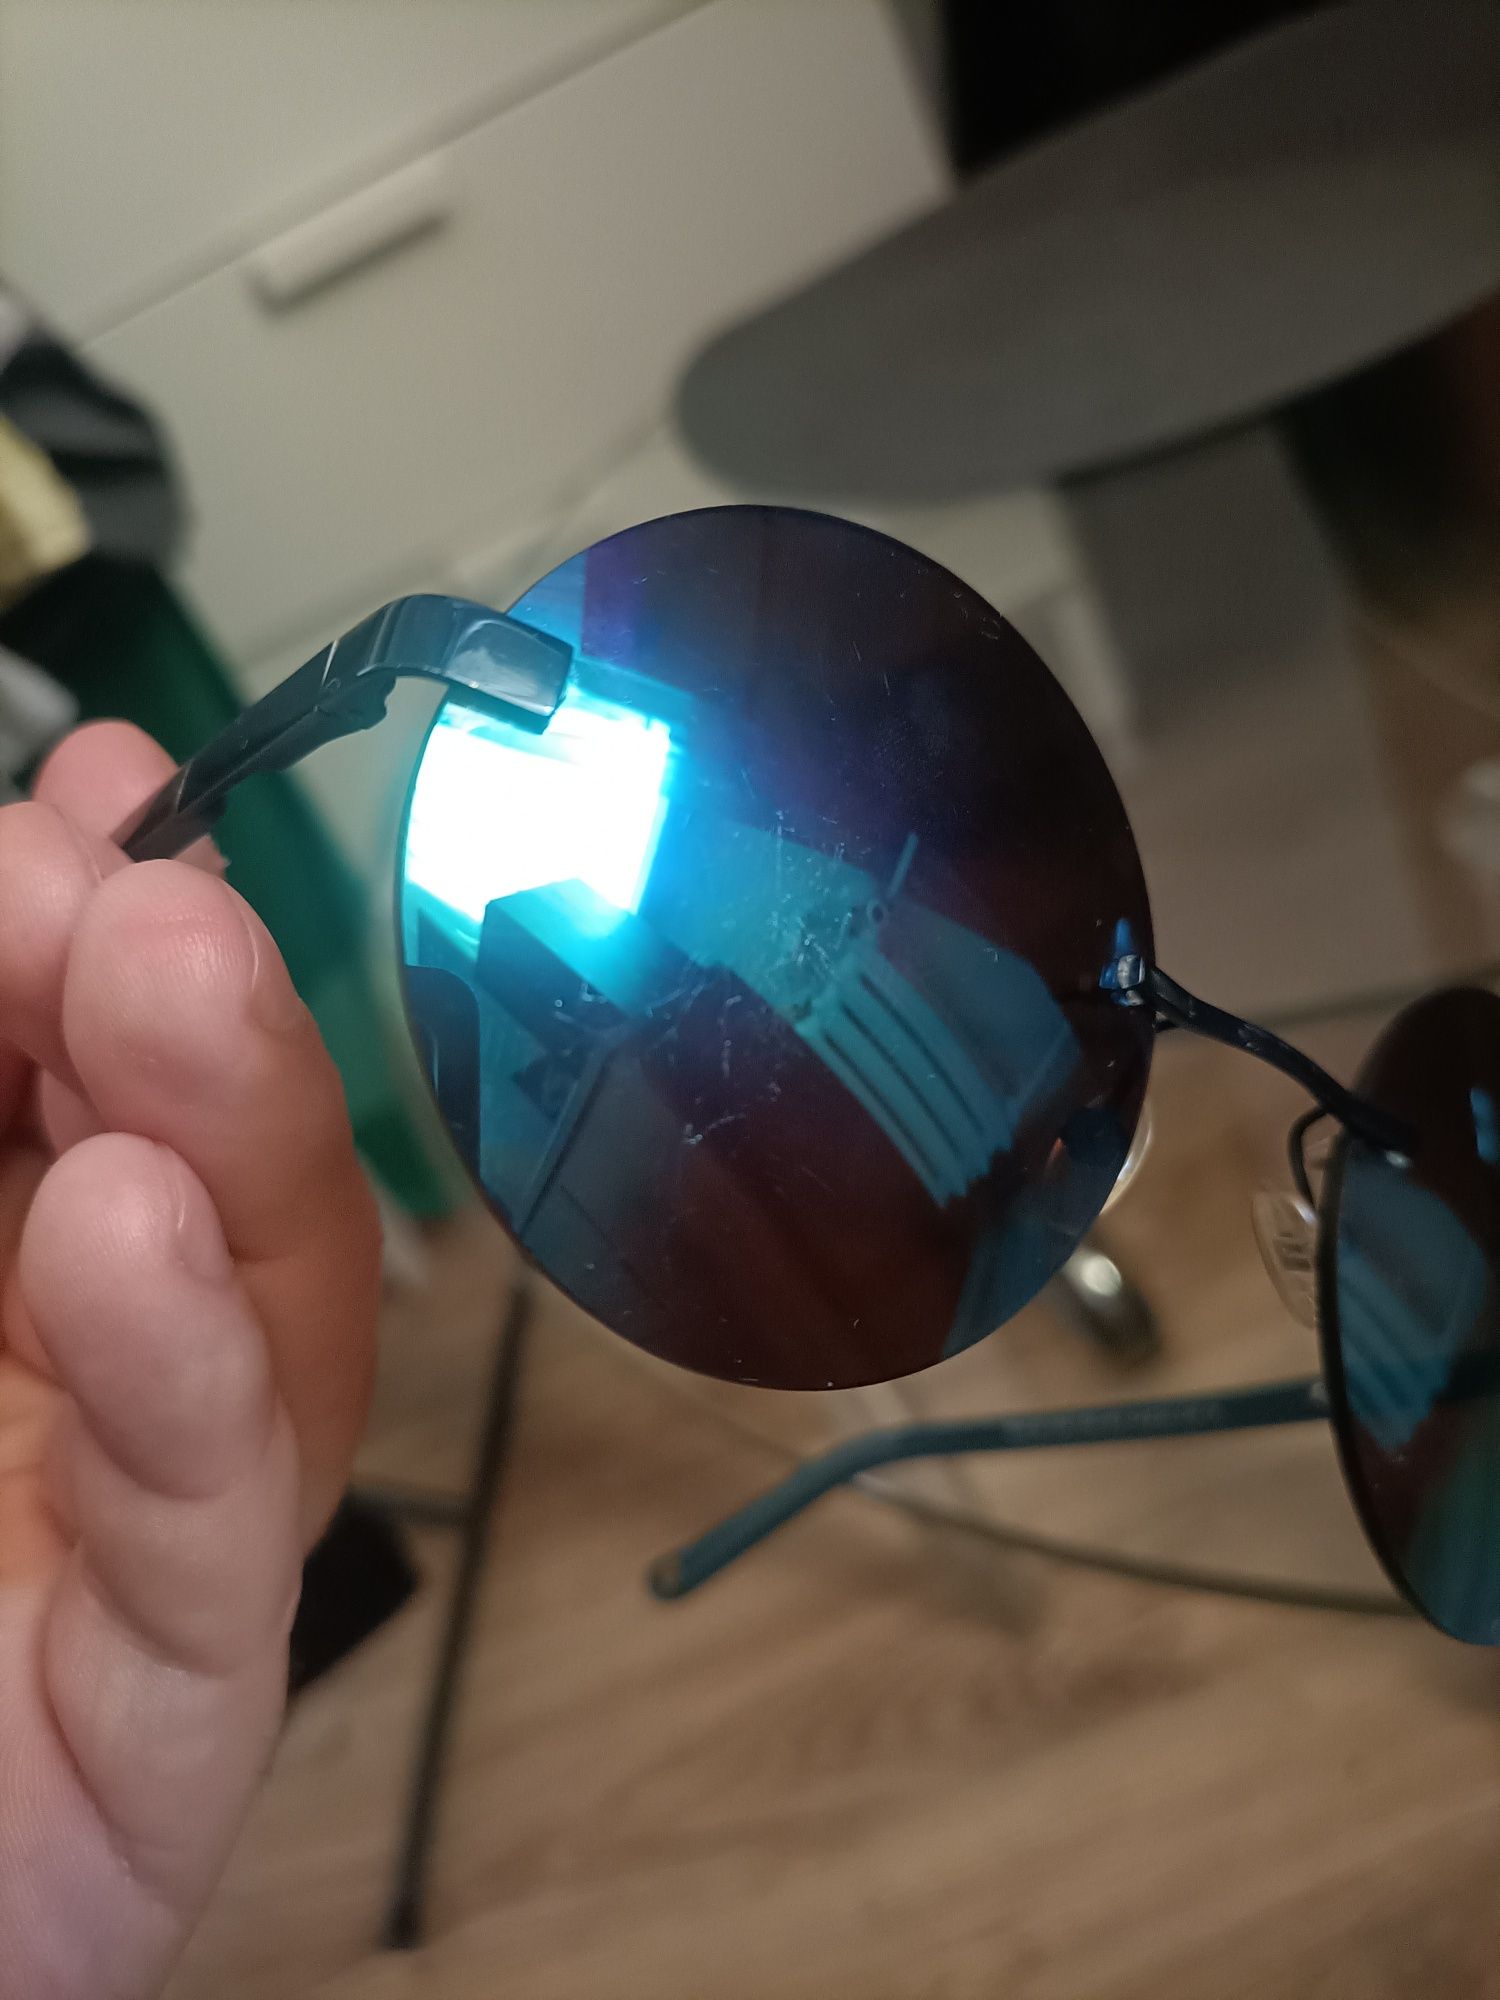 Okulary przeciwsłoneczne lustrzanki